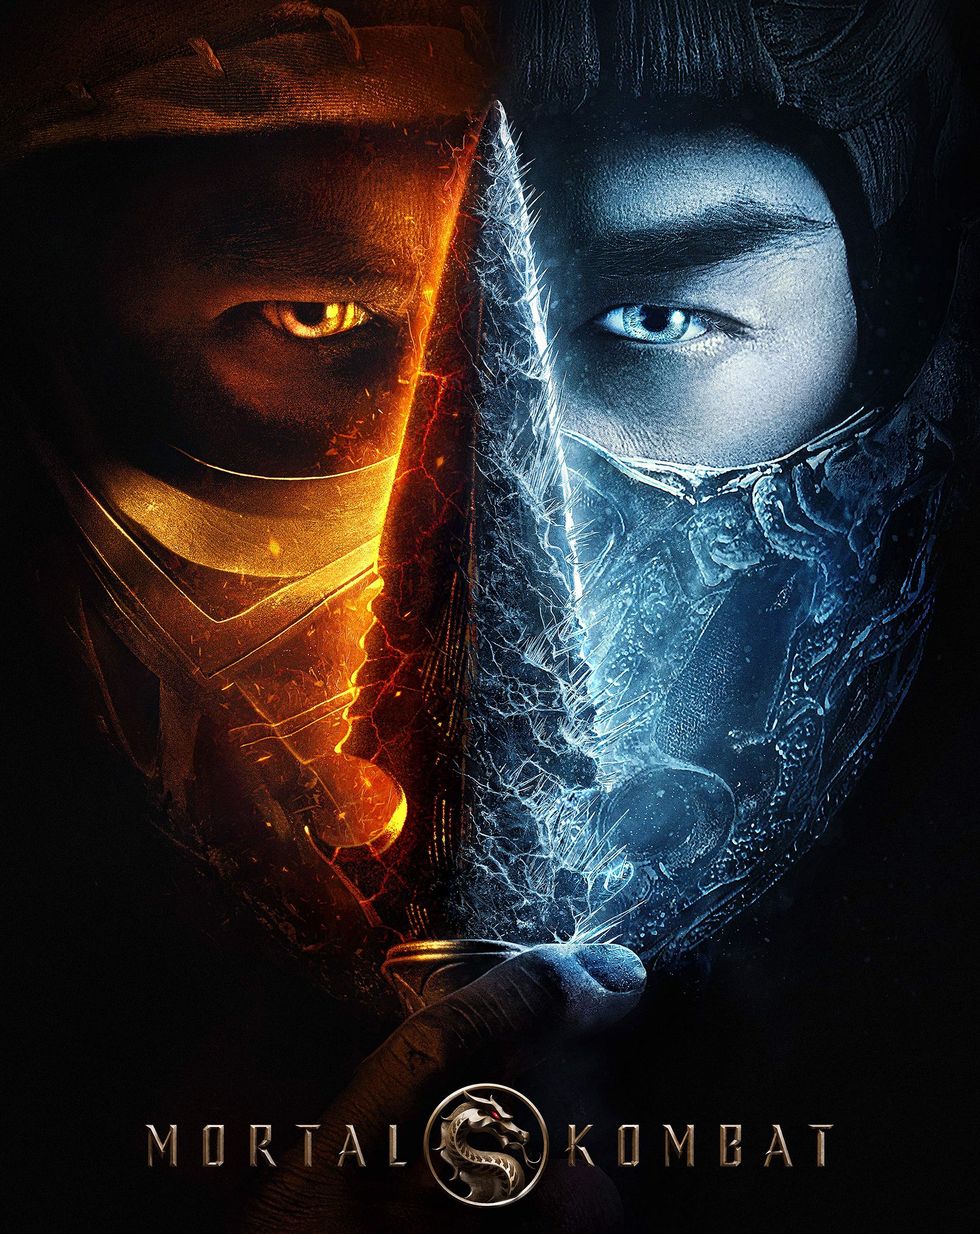 Watch "Mortal Kombat"